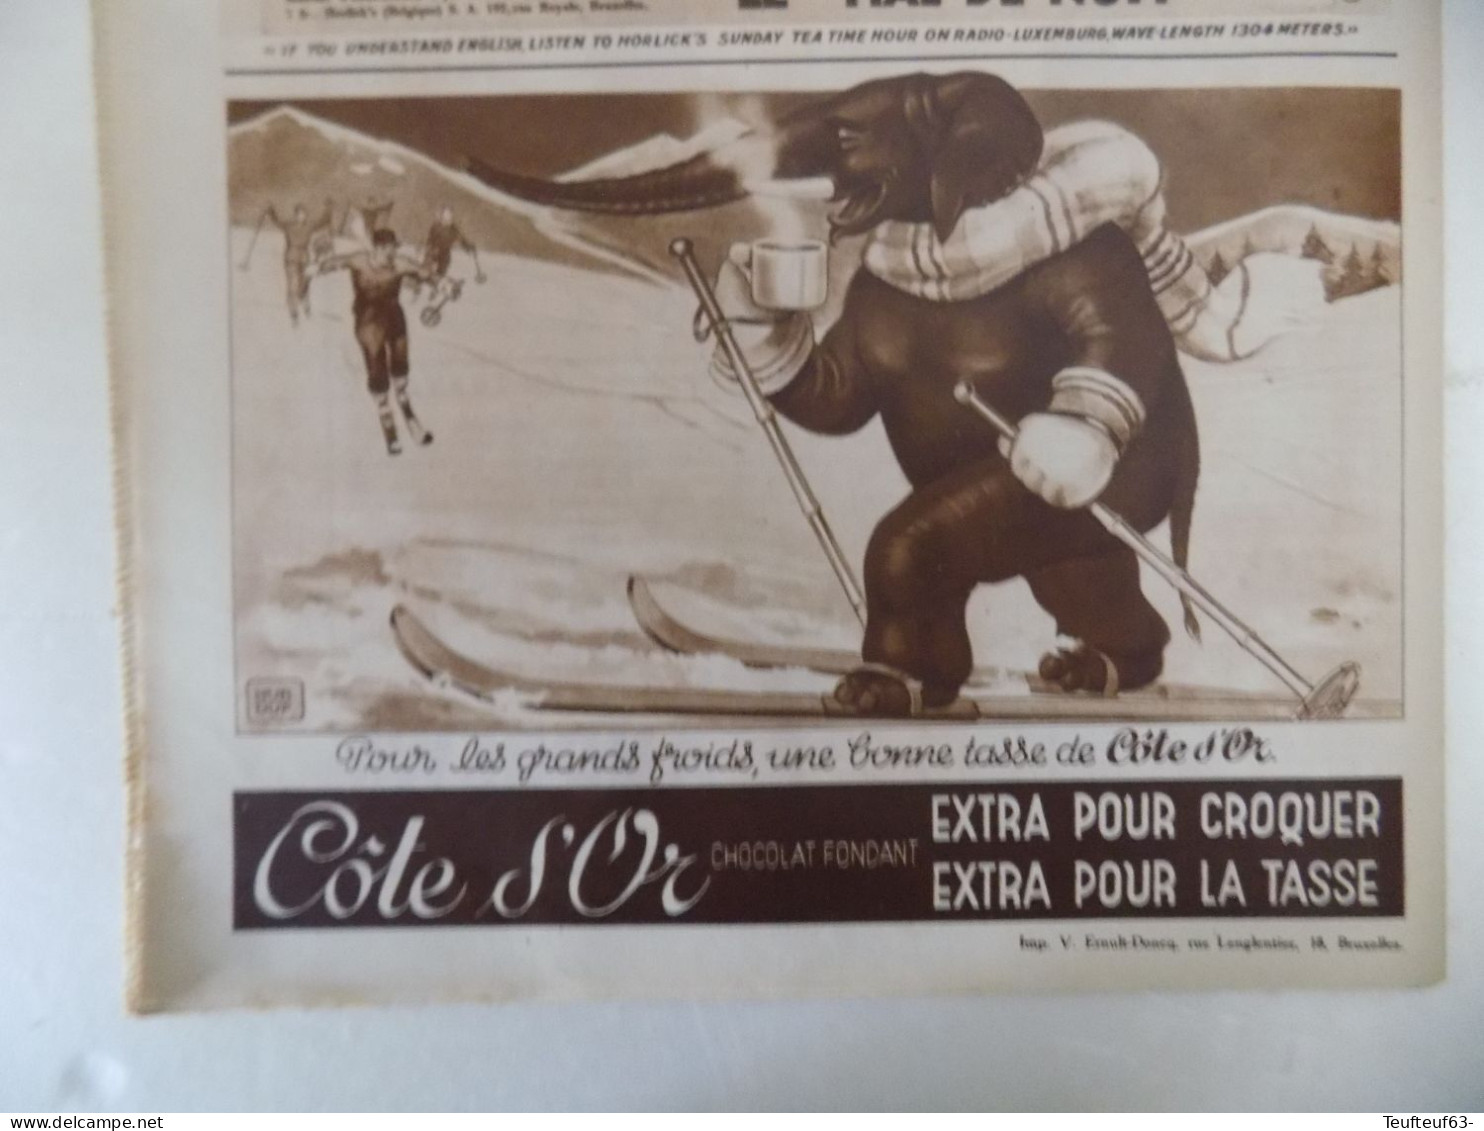 Le Patriote illustré n° 3/1936 chasse à l'éléphant - Saint-Agnan - Malines - belle pub chocolat Côte d'or..